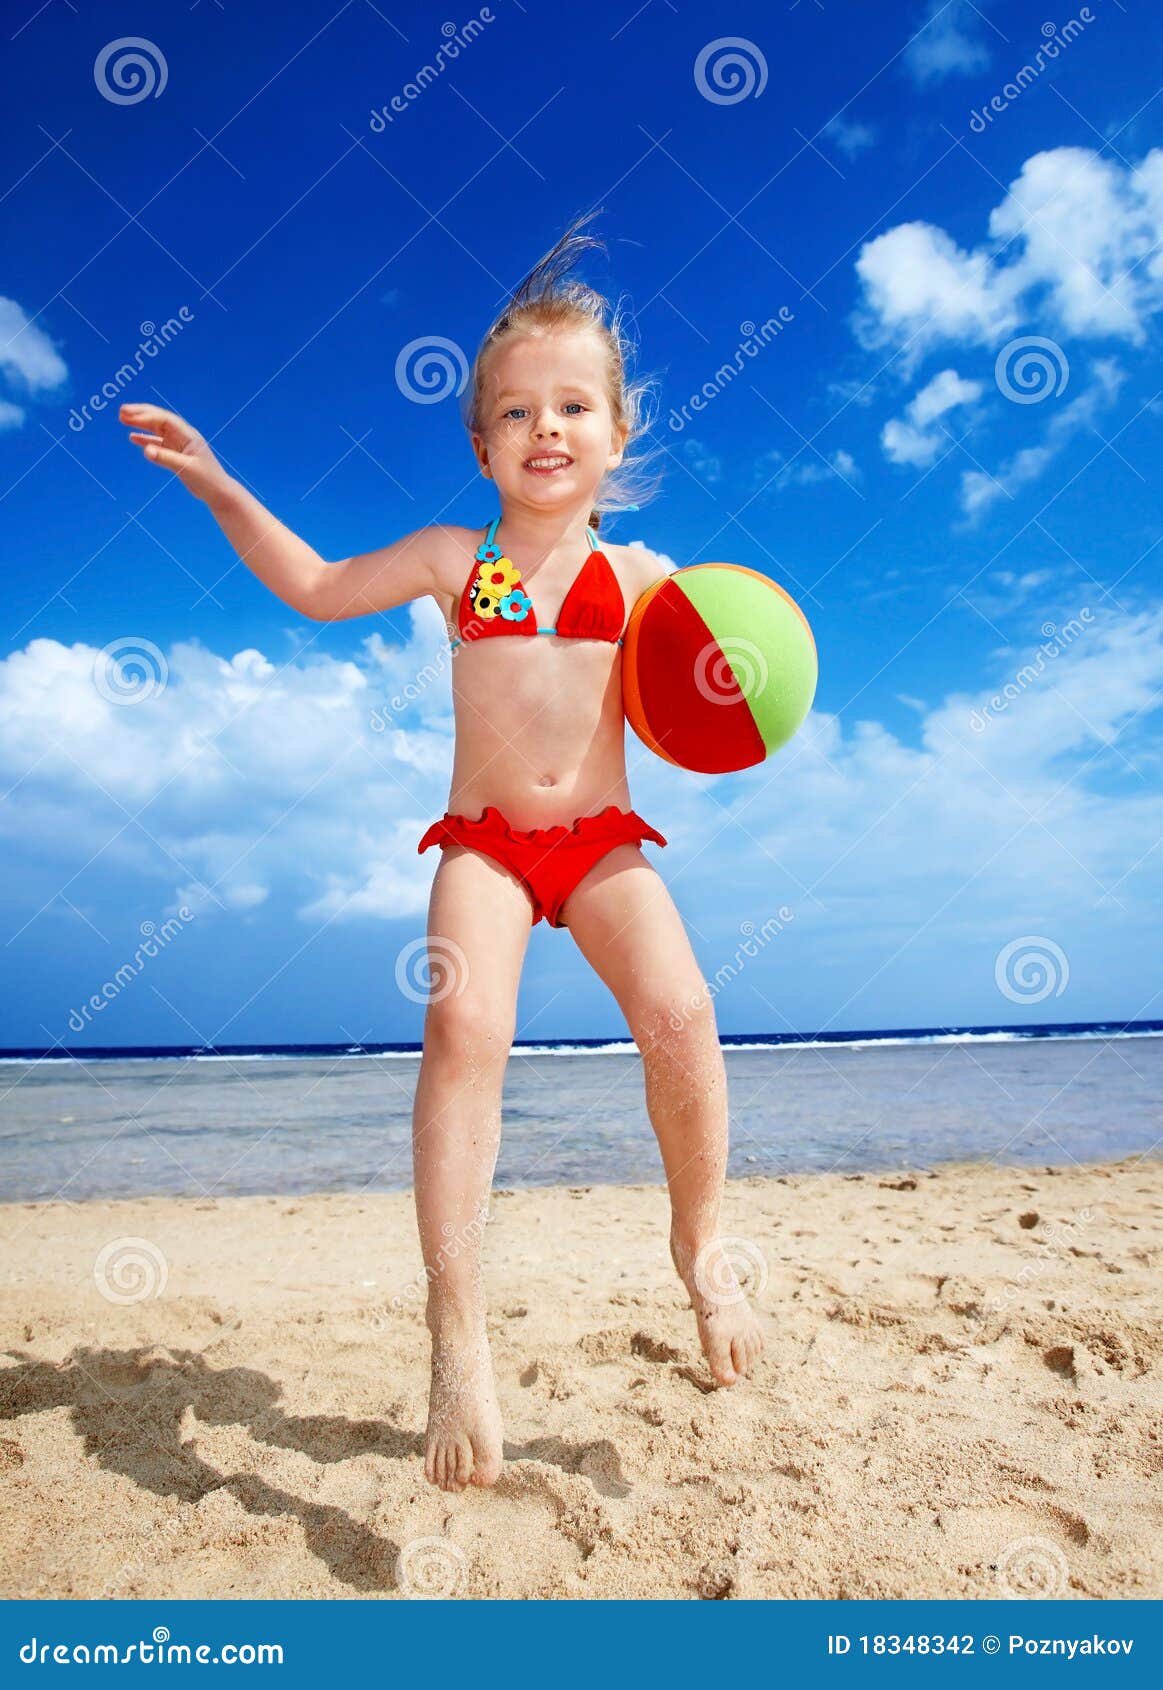 фото дети на голом пляже фото 29